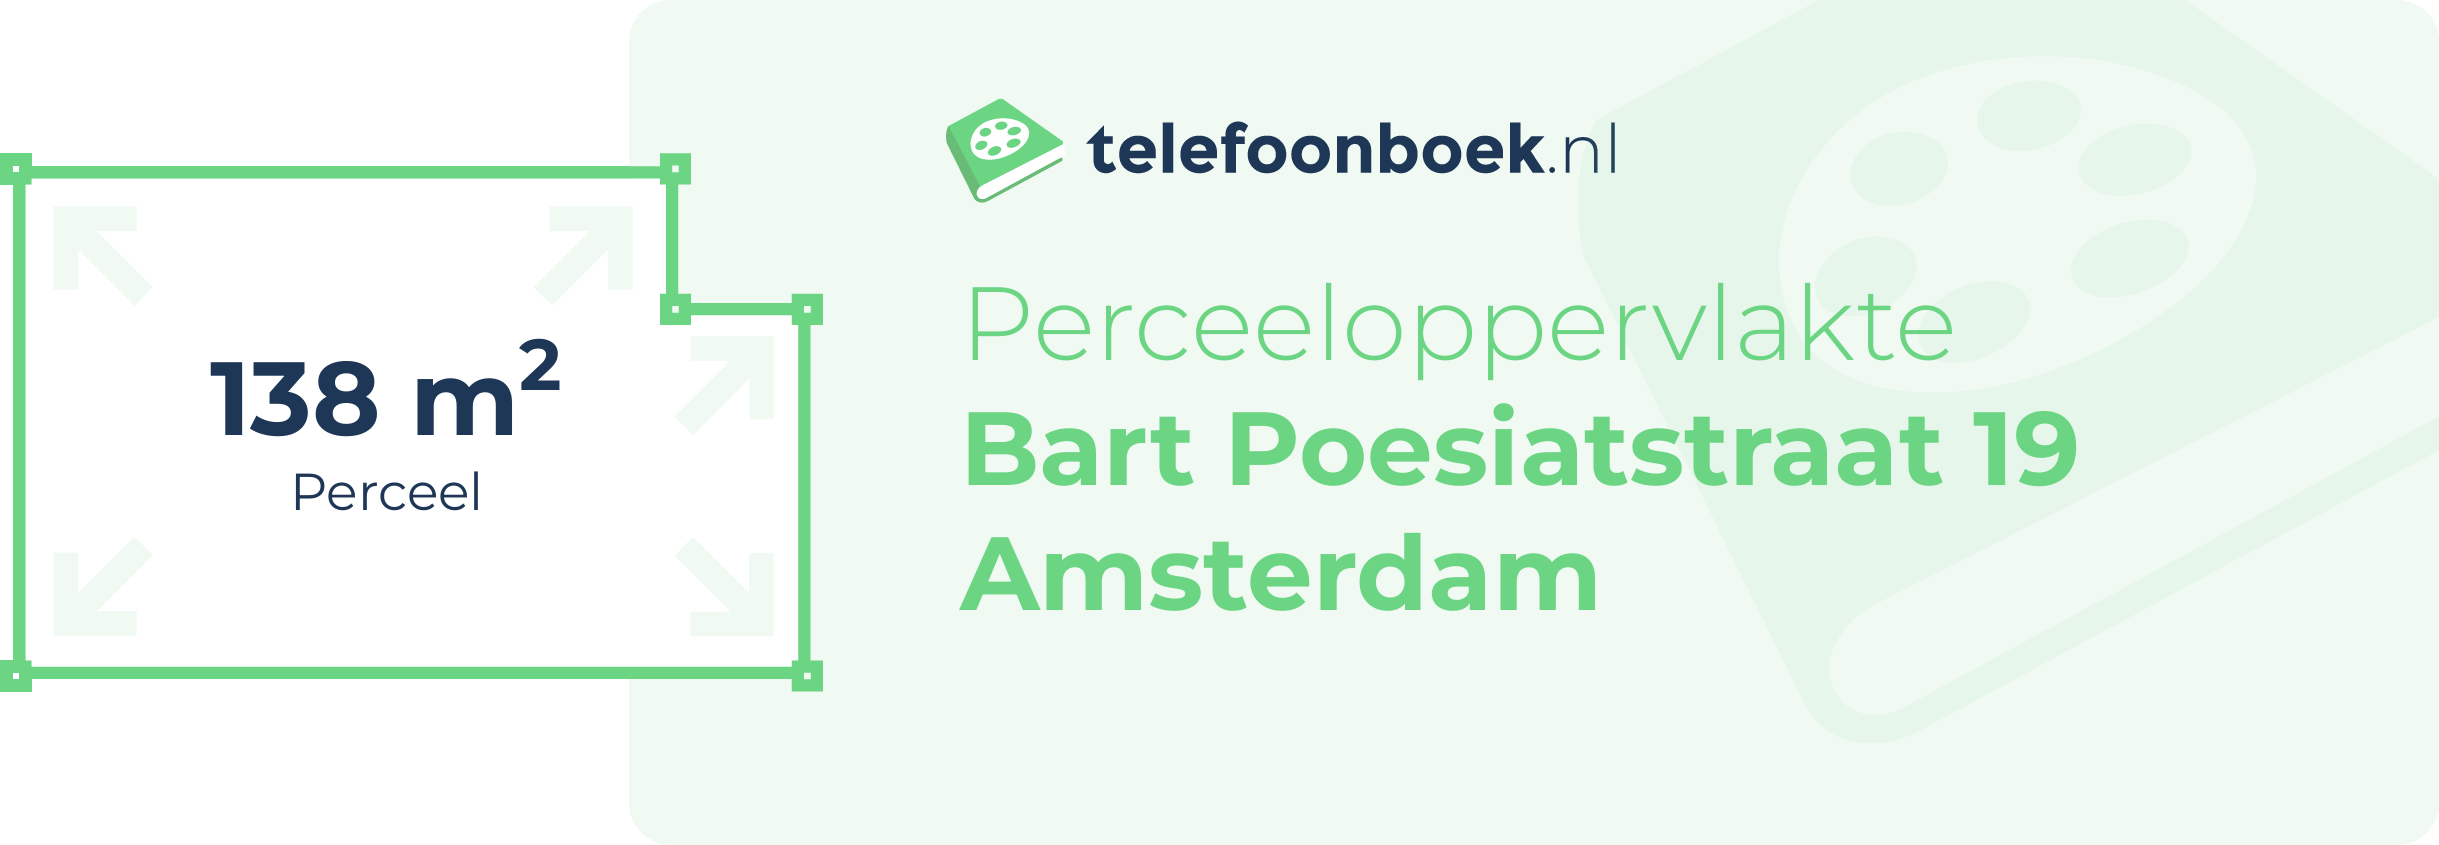 Perceeloppervlakte Bart Poesiatstraat 19 Amsterdam